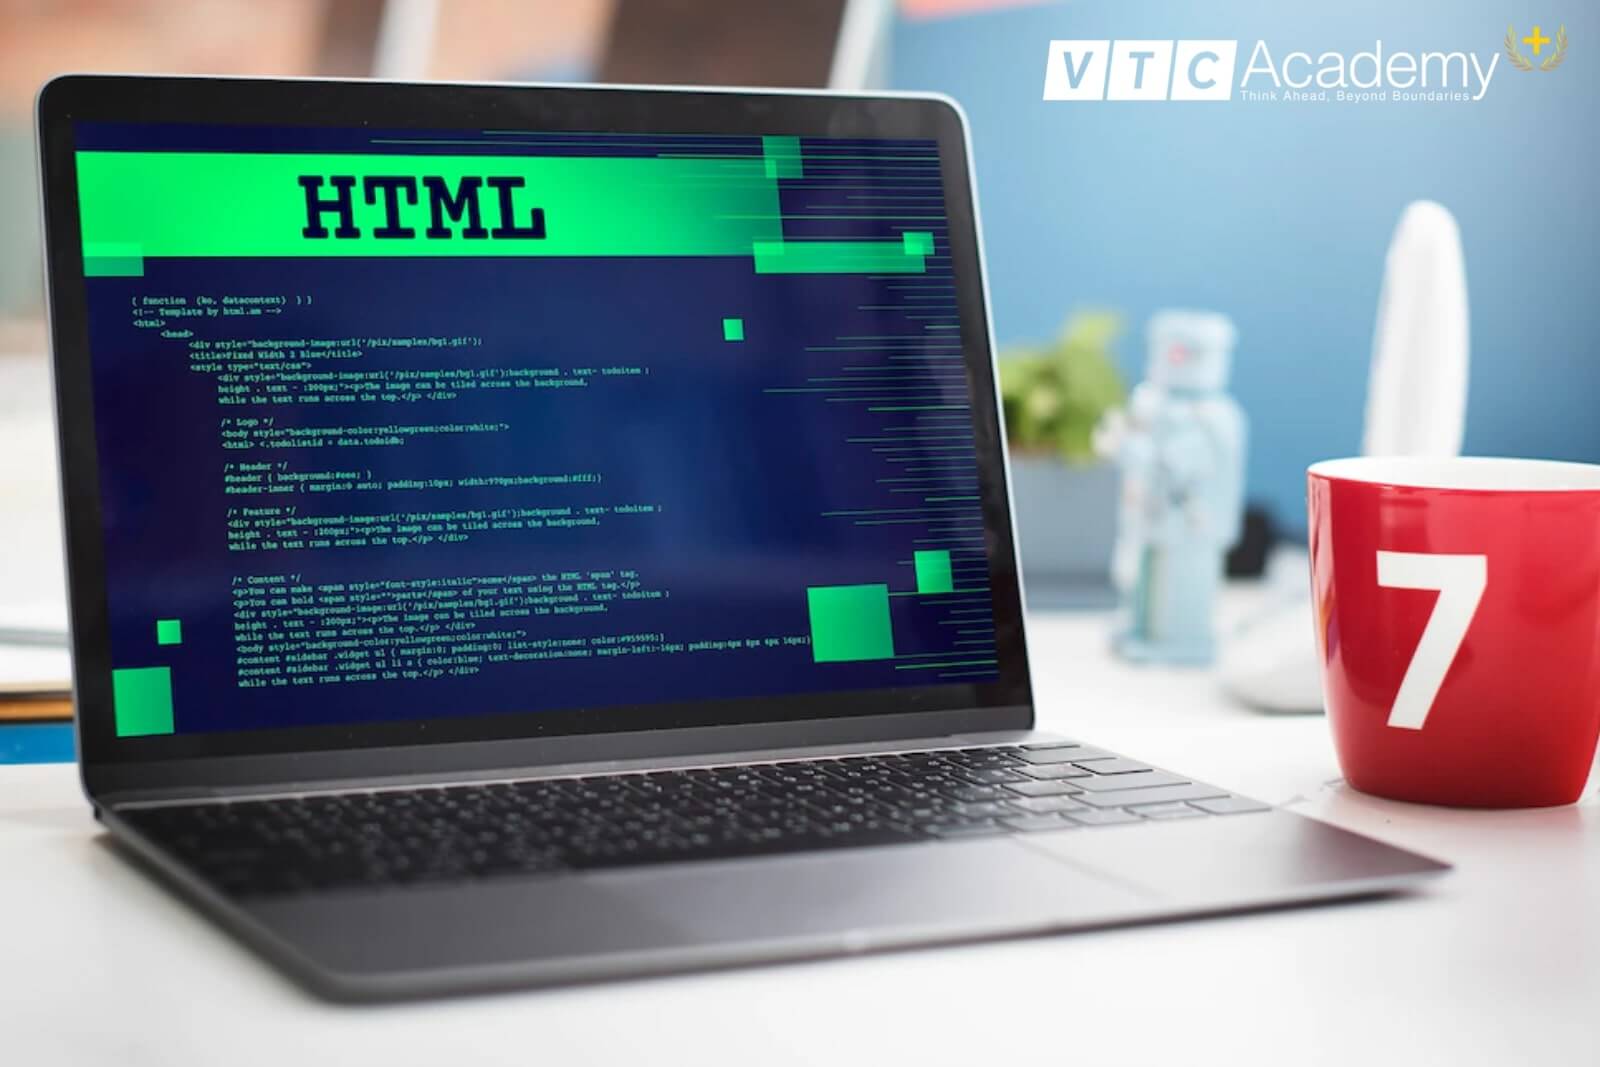 Ngôn ngữ đánh dấu HTML là một yếu tố quan trọng trong thiết kế trang web. Nếu bạn muốn biết nhiều hơn về cách sử dụng HTML, ảnh liên quan sẽ giúp bạn theo dõi và học hỏi một cách dễ dàng nhất.